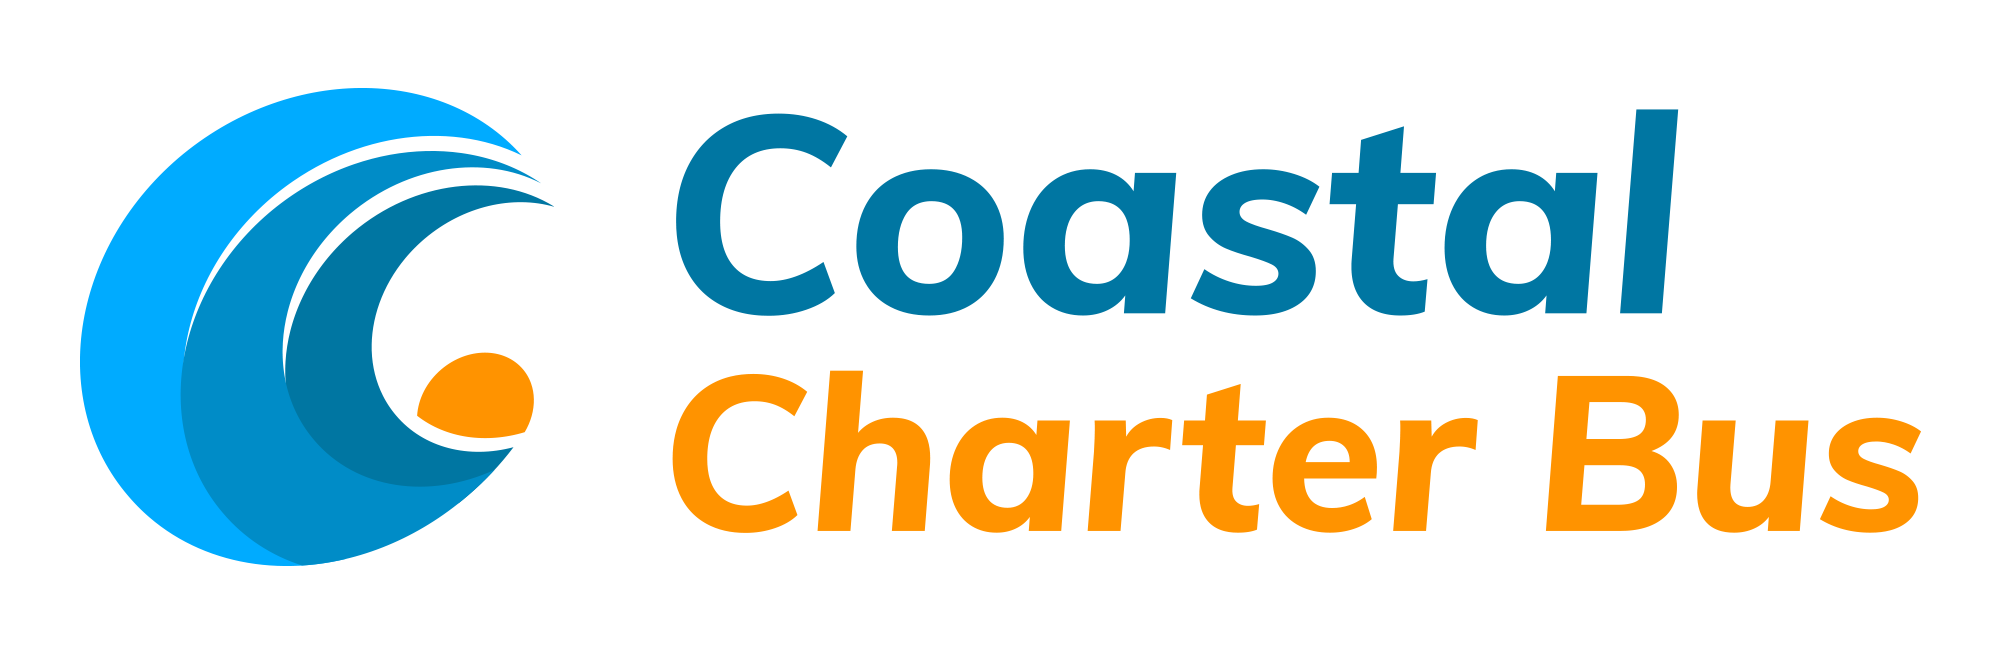 Coastal charter bus company